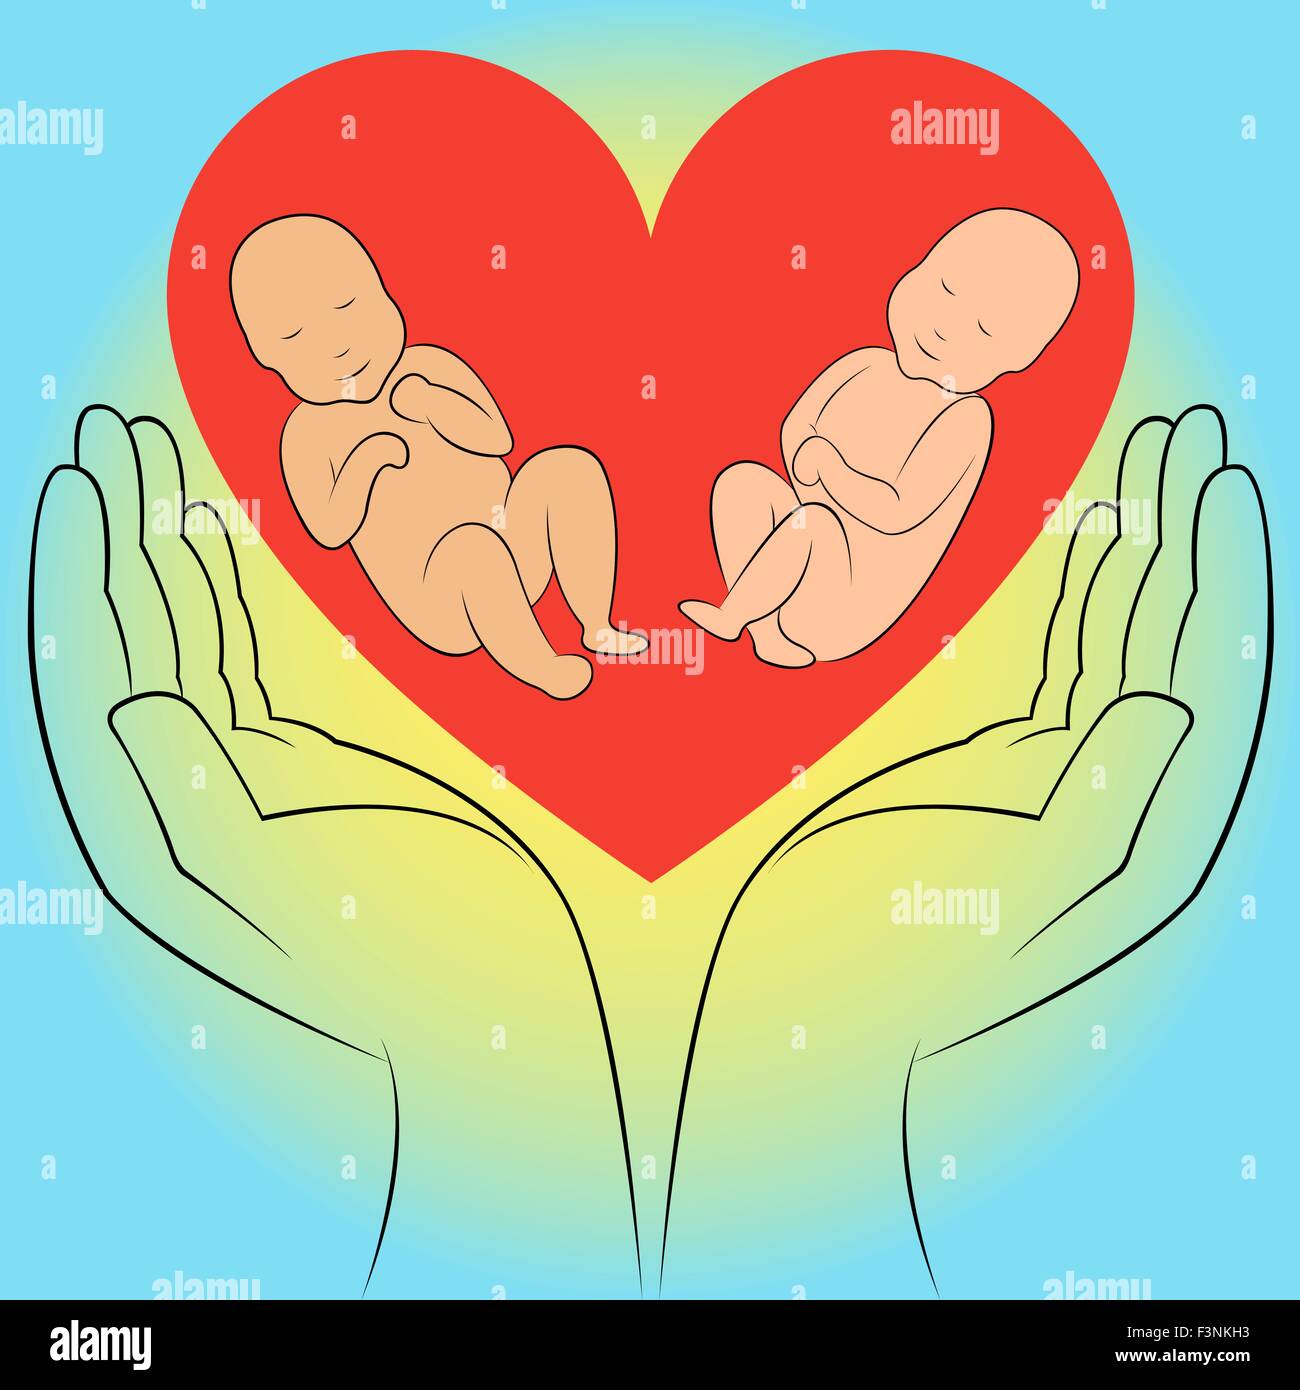 Zwei ungeborenen Babys in menschlicher Hand auf dem Herz Hintergrund. Hand-Zeichnung-Vektor-illustration Stock Vektor